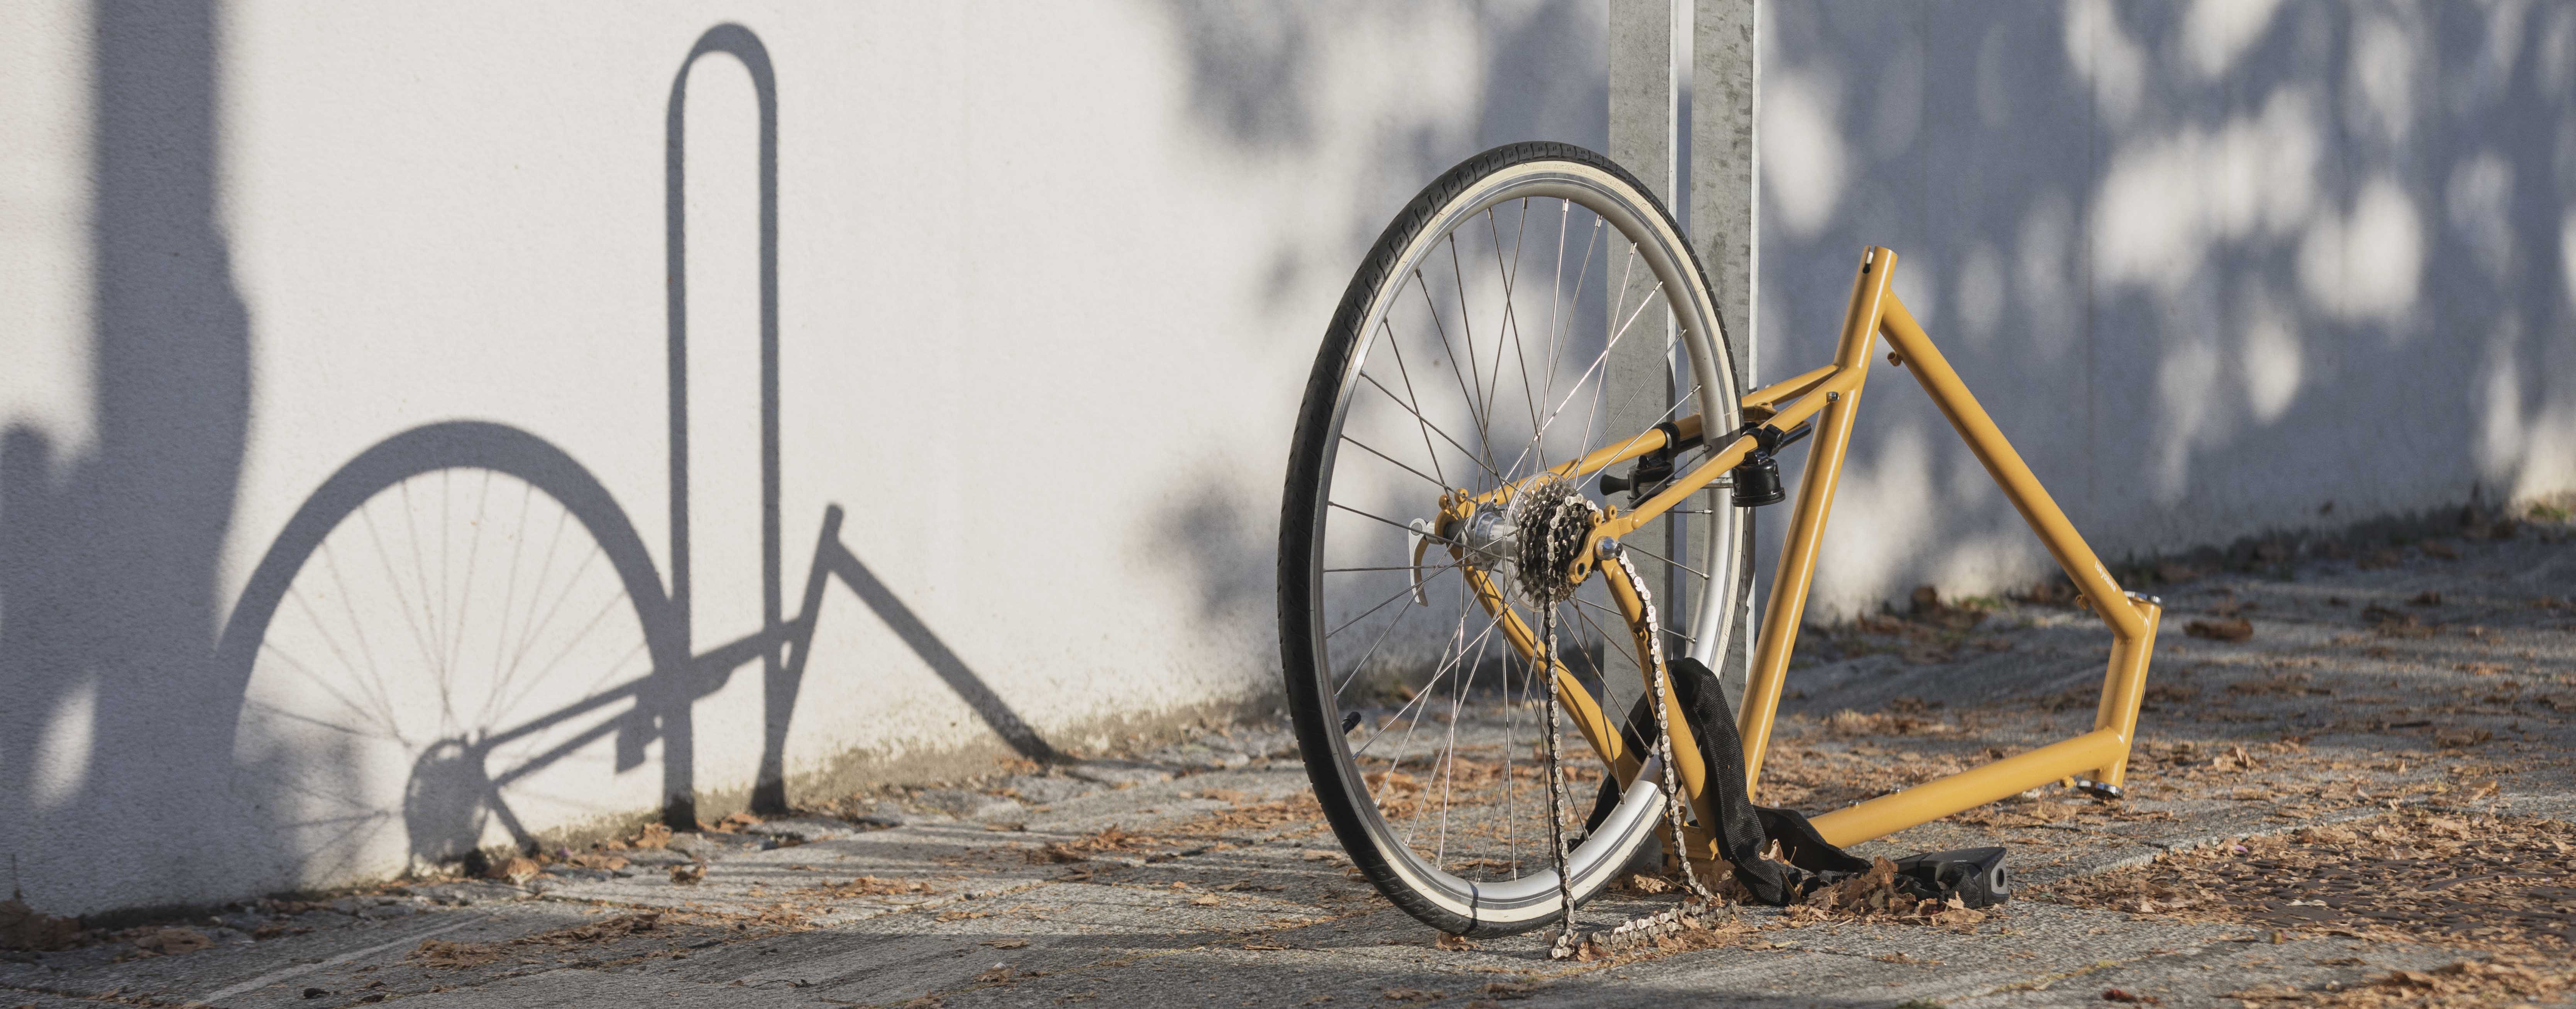 Cykelforsikring | Er cykel forsikret? |